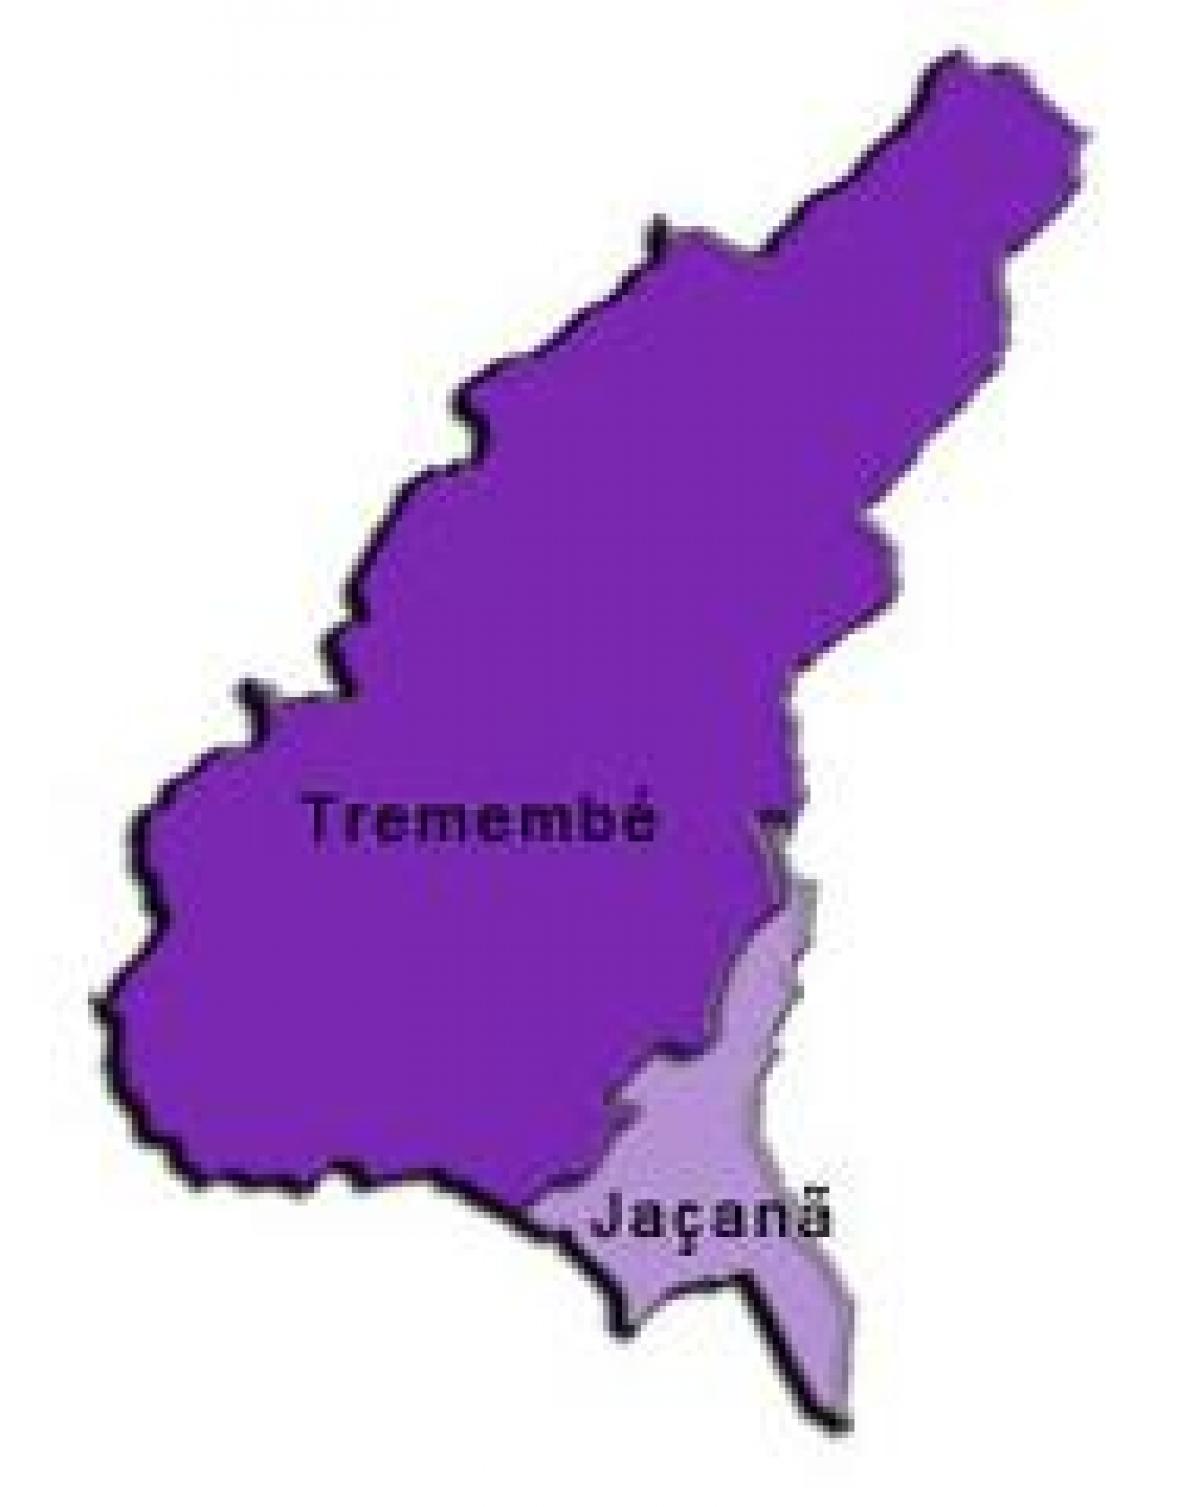 Mapa de Jaçanã-Tremembé sub-concello